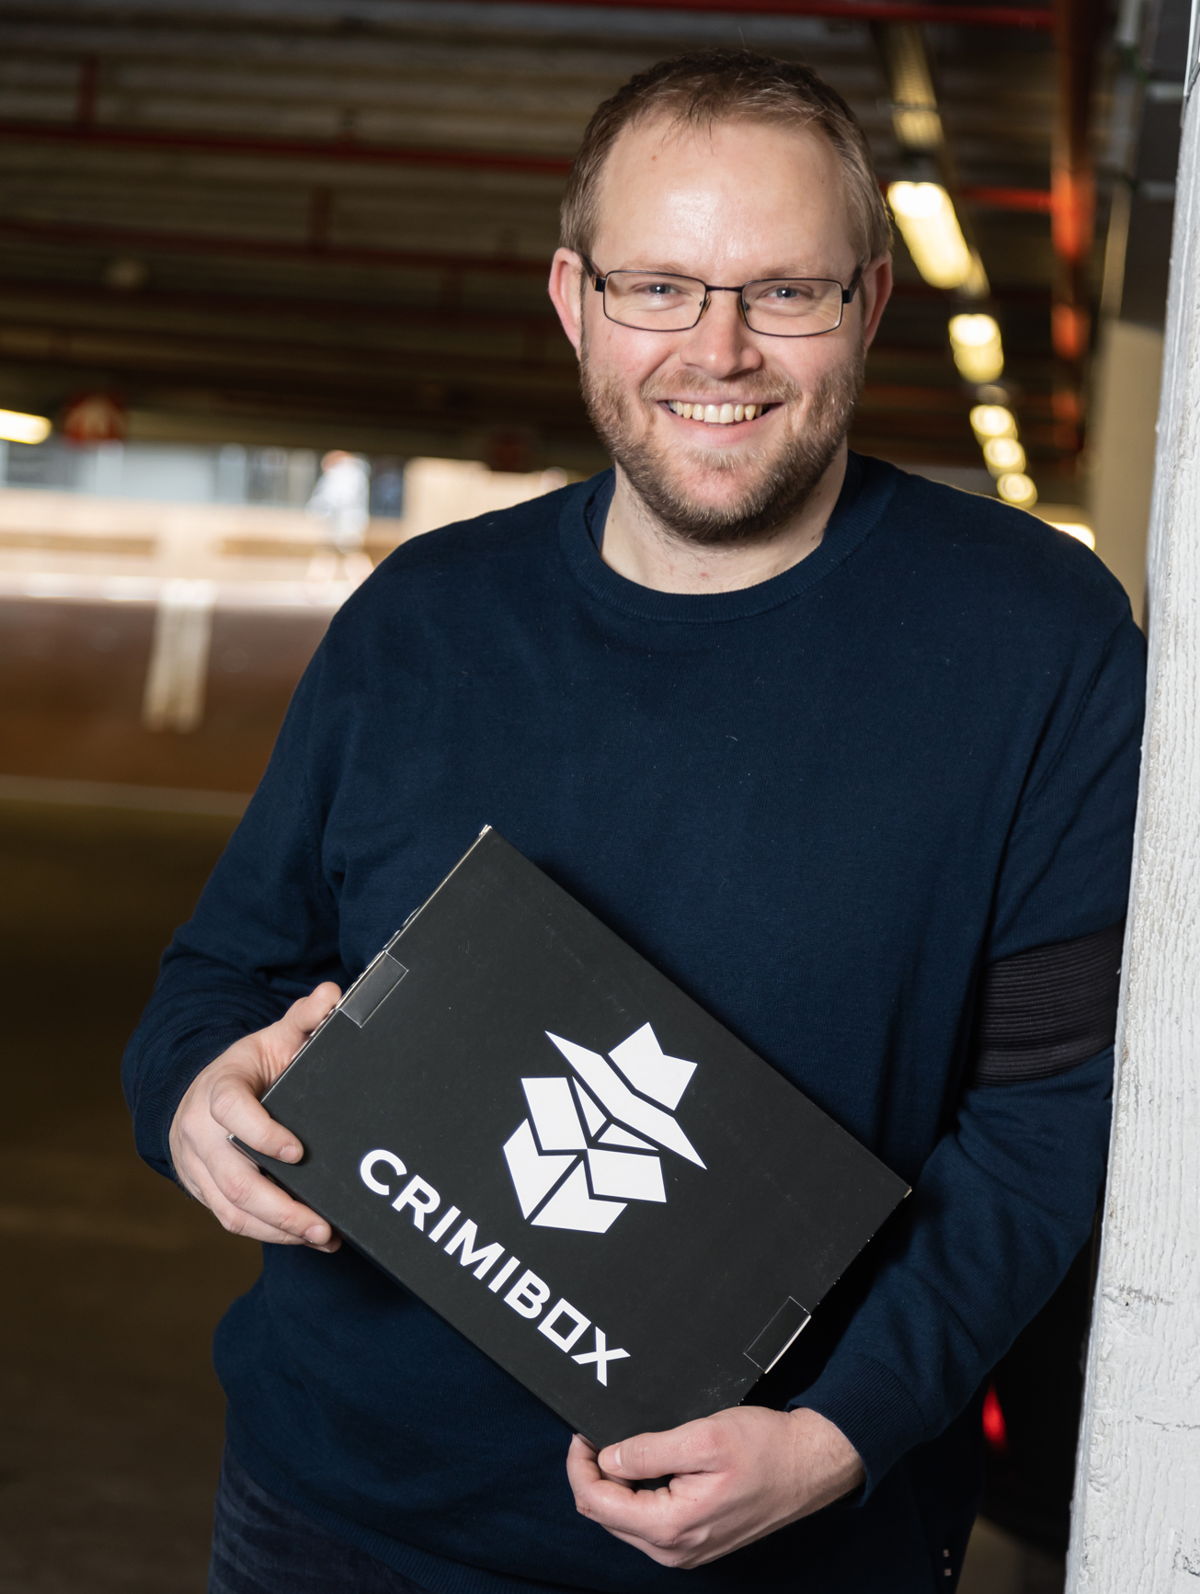 Jimmy Cowe, fondateur de Crimibox